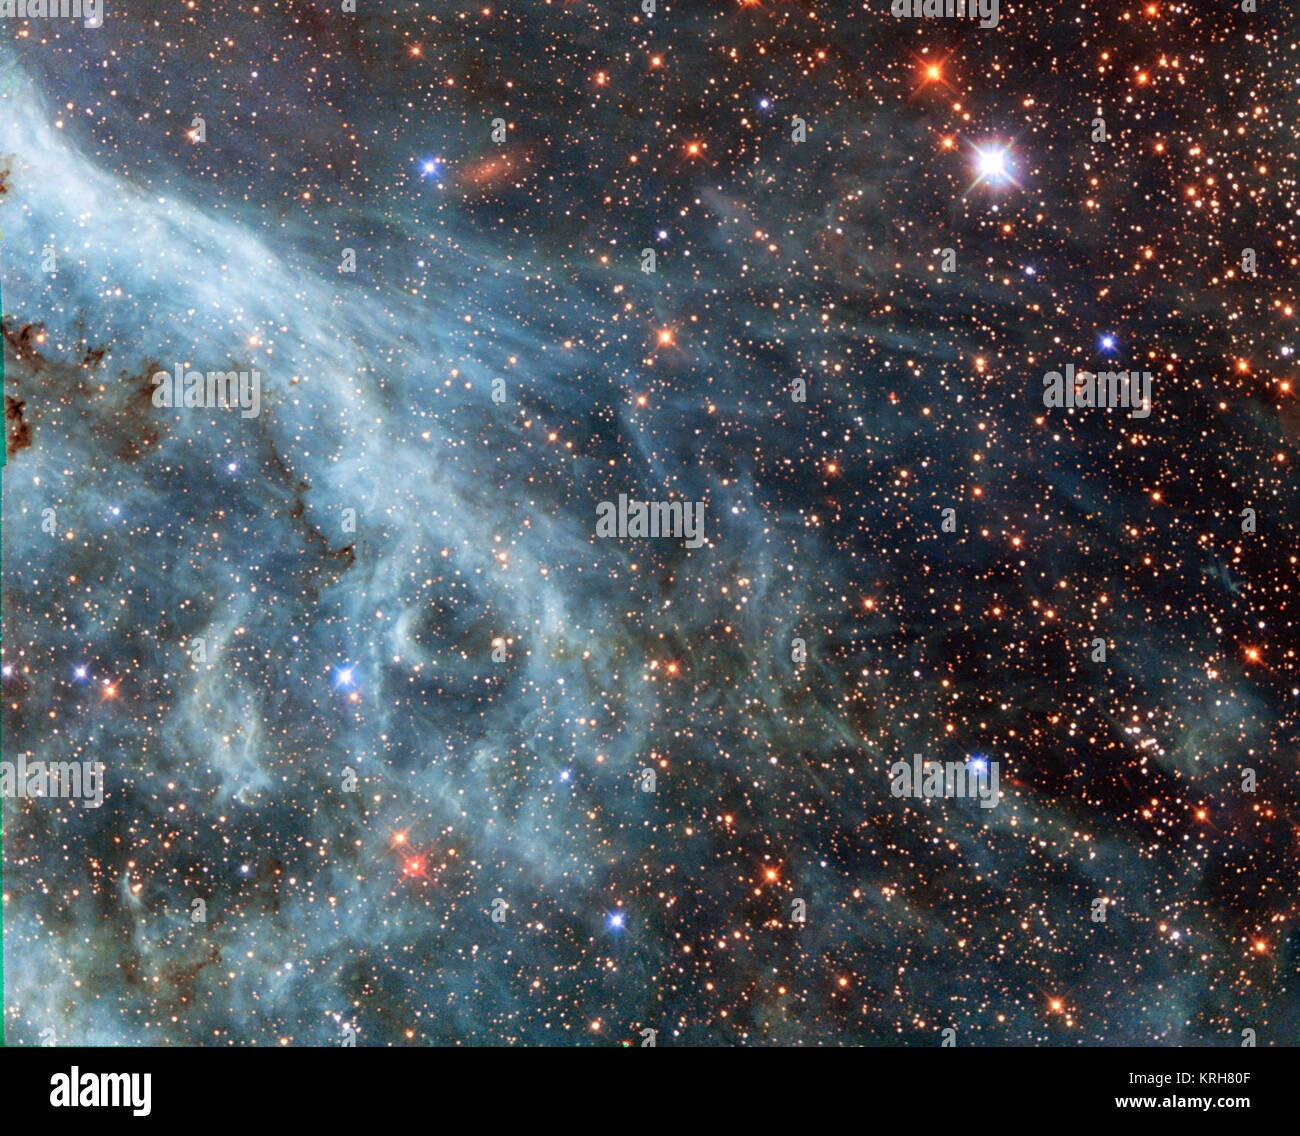 Les panaches rougeoyants vu dans cette image ne sont pas sans rappeler une scène sous-marine, avec les courants et teinté turquoise brins nébuleux atteindre dans les environs. Cependant, ce n'est pas de l'océan. Cette image montre en fait partie du Grand Nuage de Magellan (LMC), une petite galaxie voisine qui orbite autour de notre galaxie, la Voie lactée, et apparaît comme une tache floue dans notre ciel. La NASA/ESA Hubble Space Telescope a jeté un coup d'un grand nombre de fois dans cette galaxie, libérant des images époustouflantes de l'nuages de gaz et étoiles filantes (opo9944a, heic1301, IPE1408a). Cette image montre une partie de la Tarentule N Banque D'Images